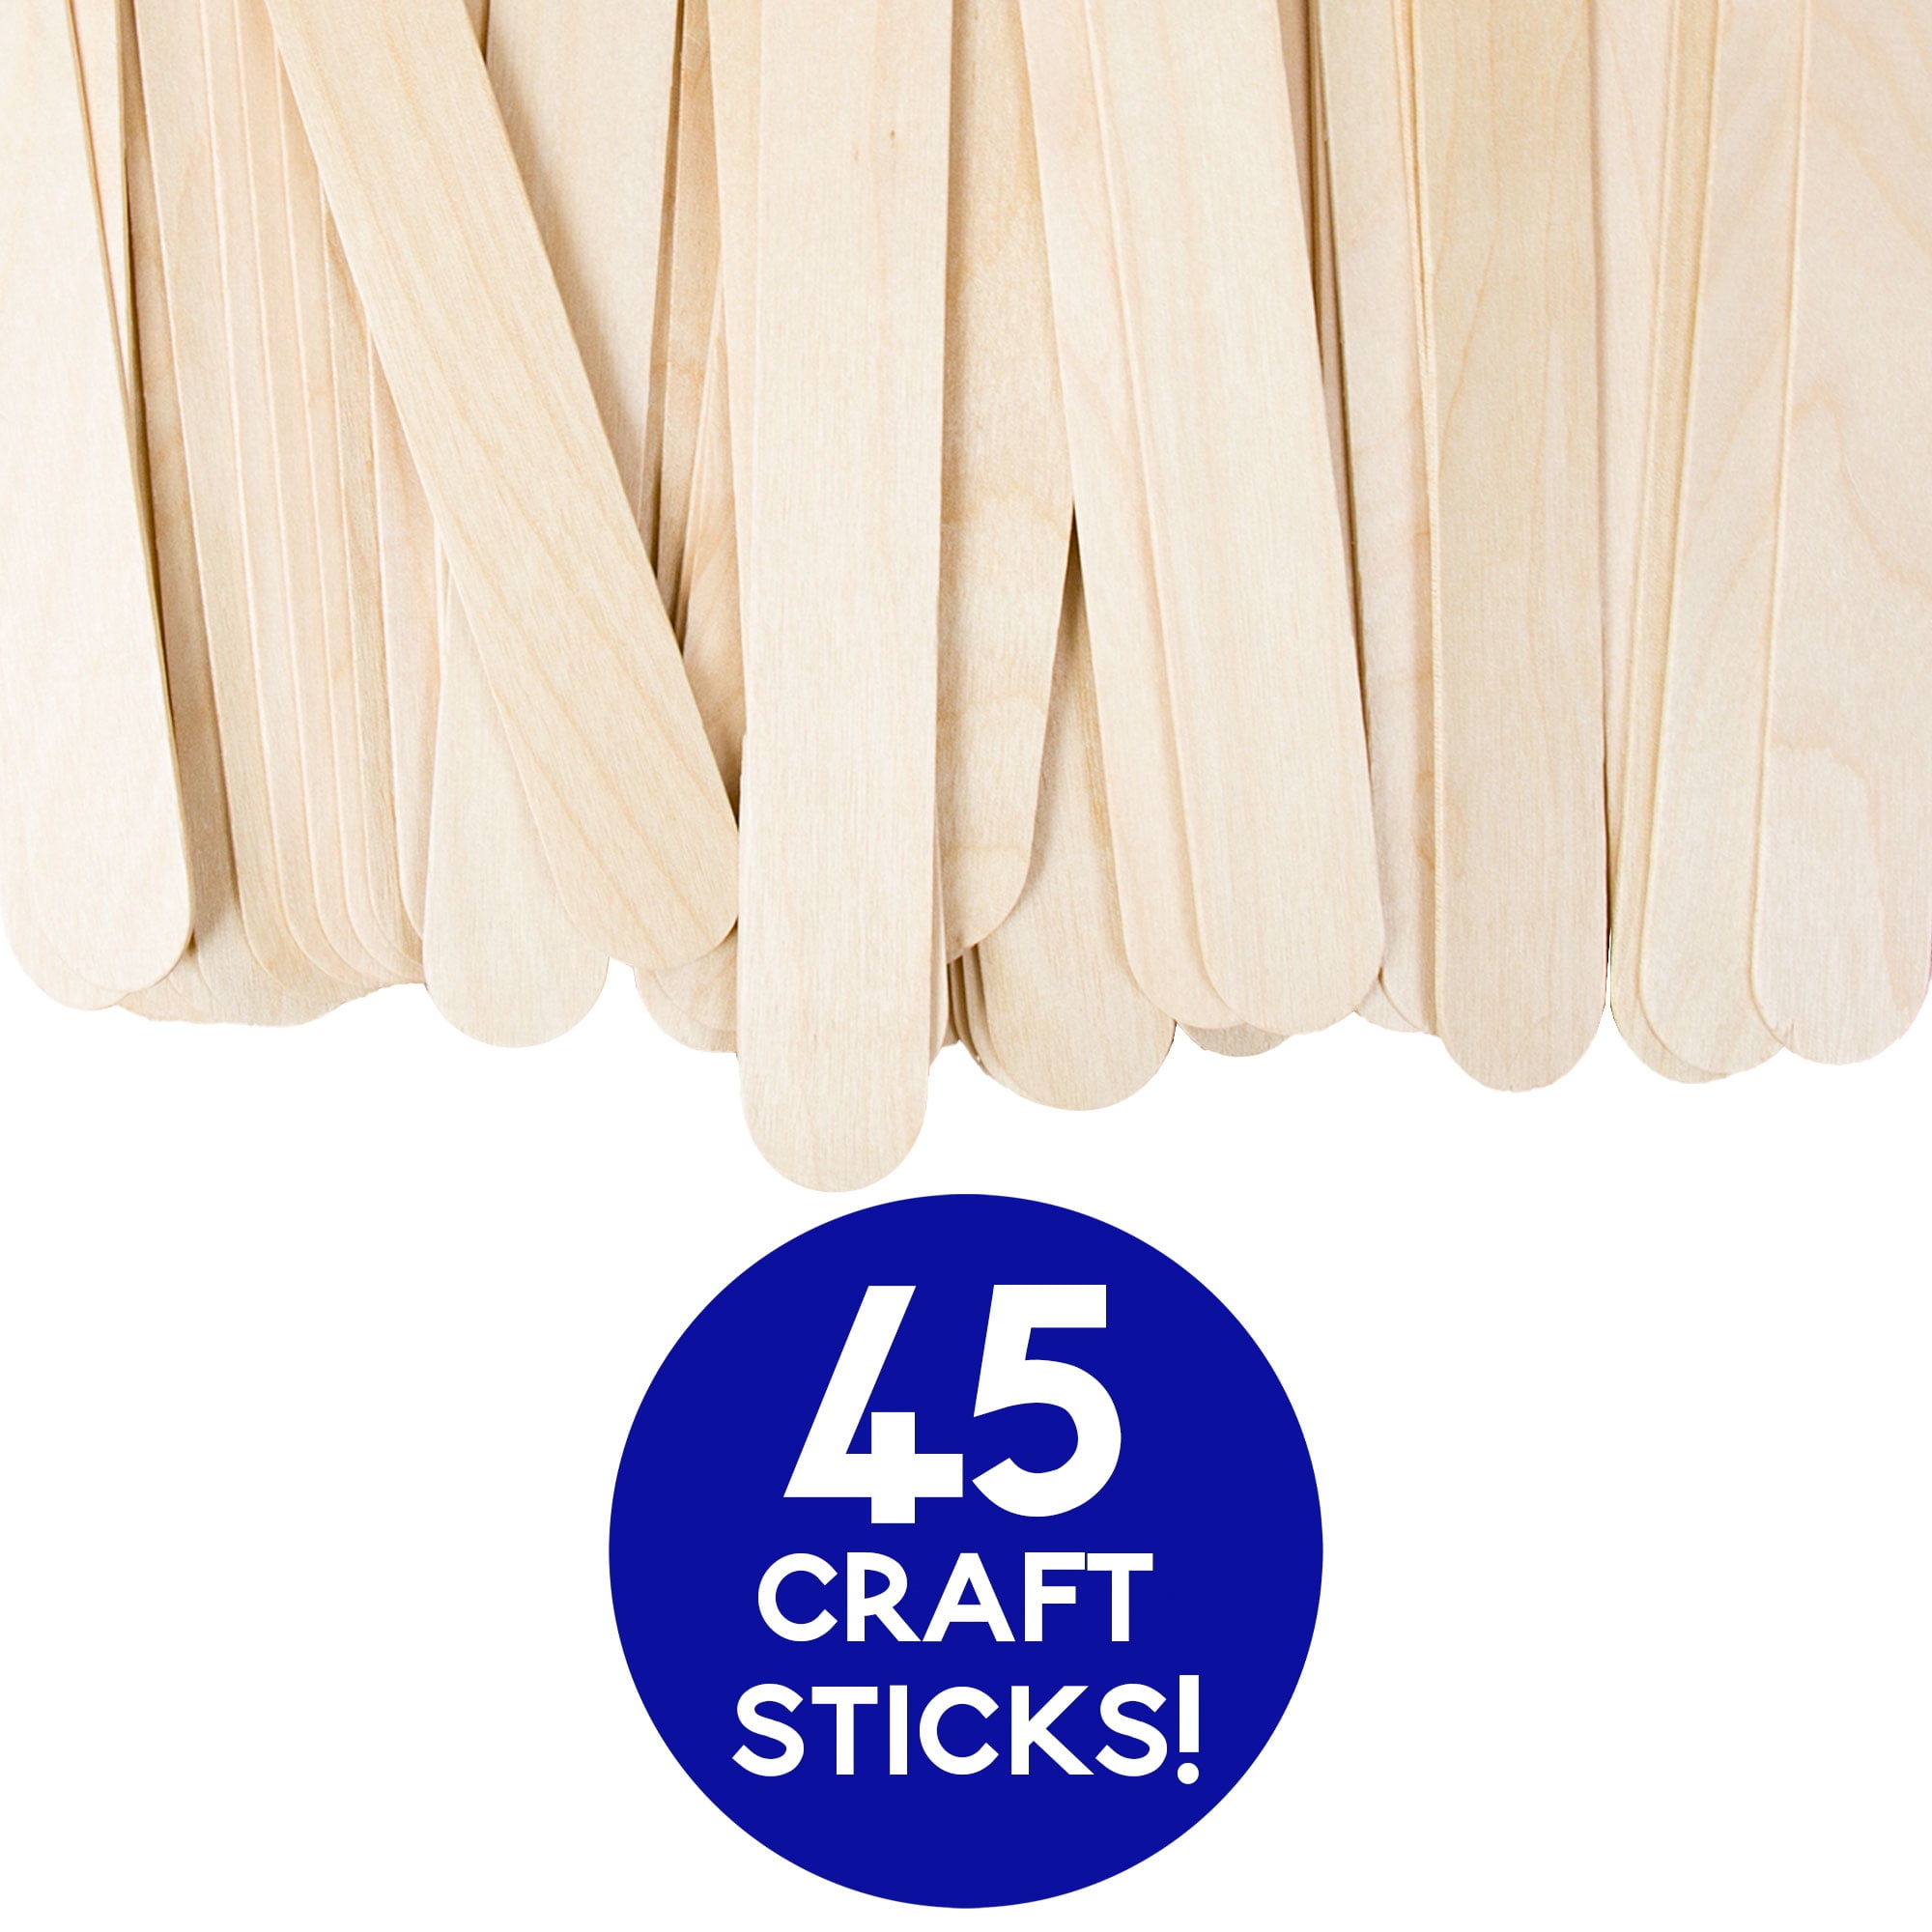 Lakeshore Jumbo Craft Sticks